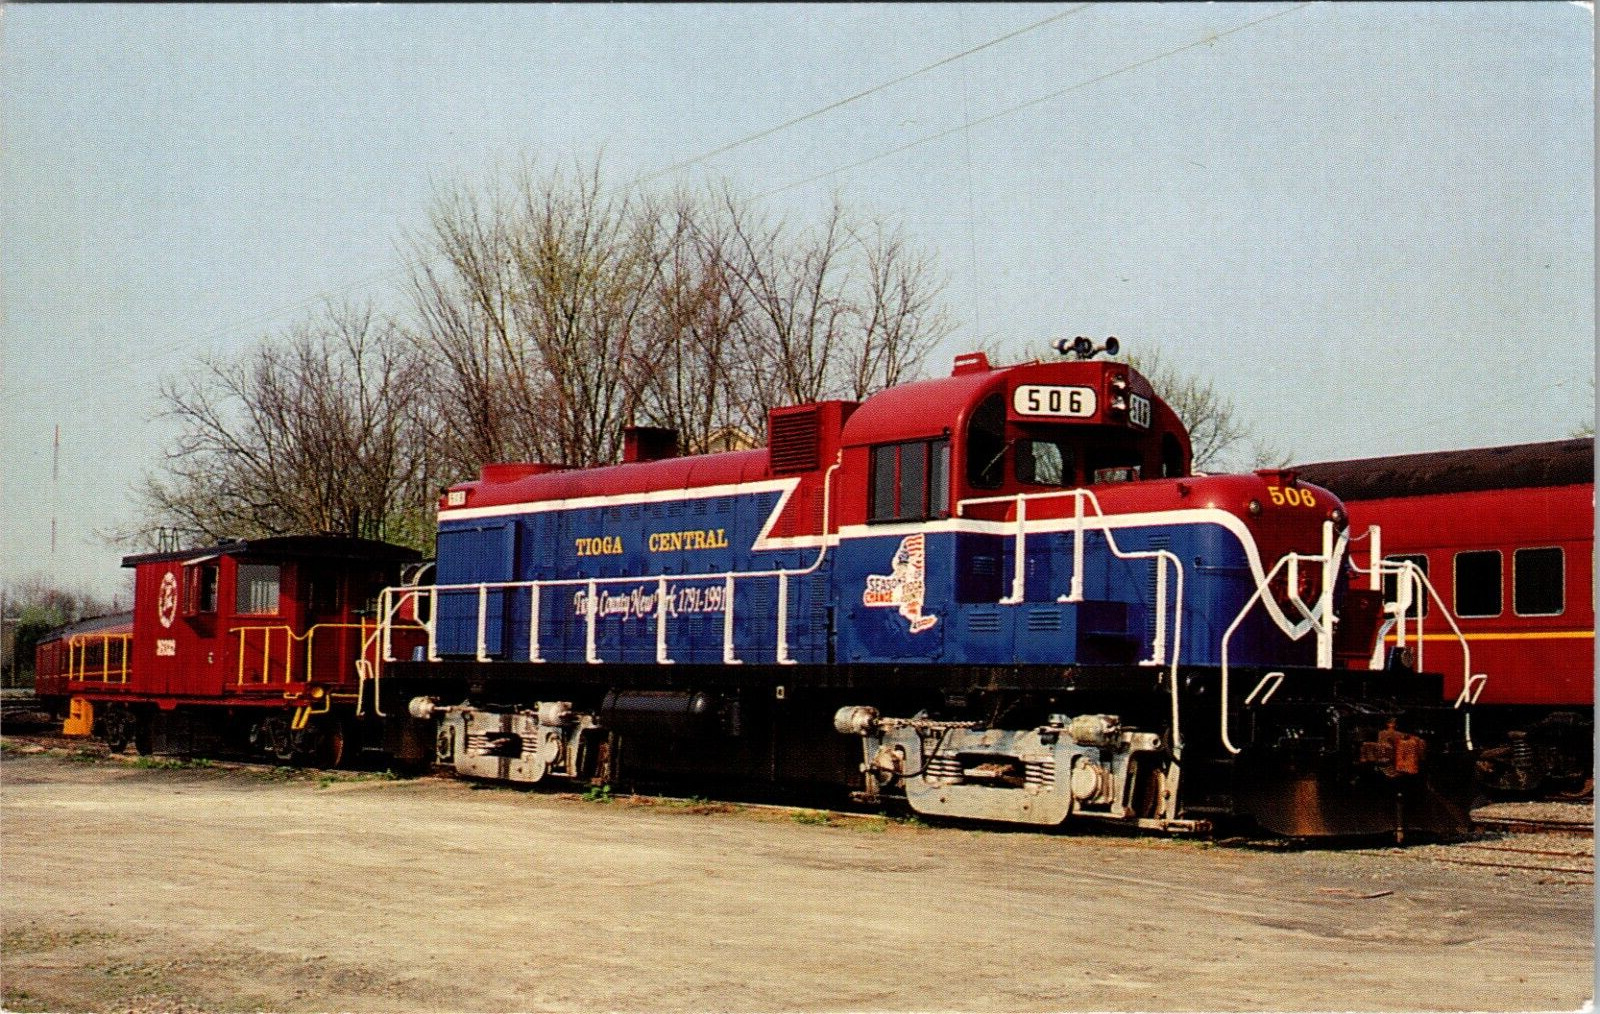 Alco RS3u No 506 Locomotive Train Tioga Central Railroad Postcard L2